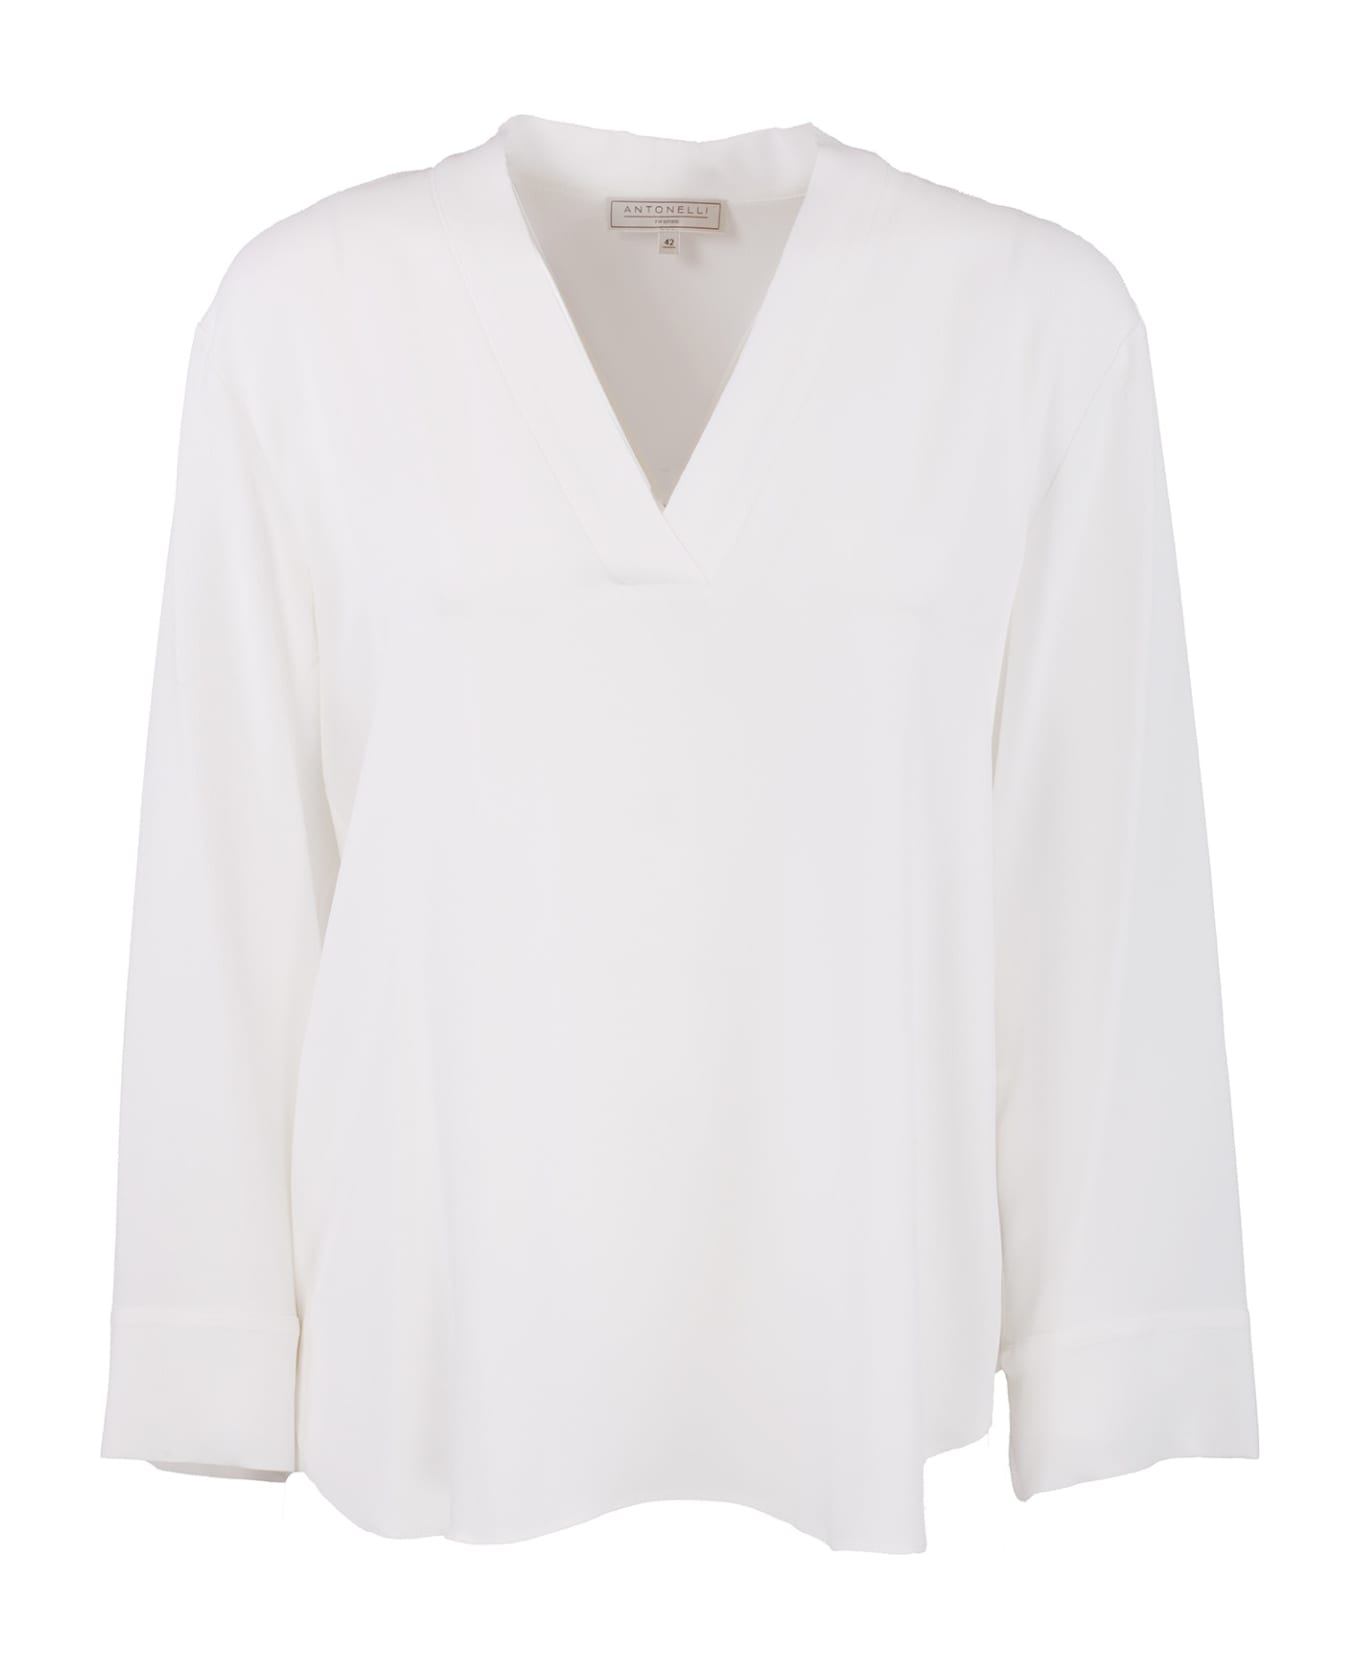 Antonelli Firenze Shirts White - White